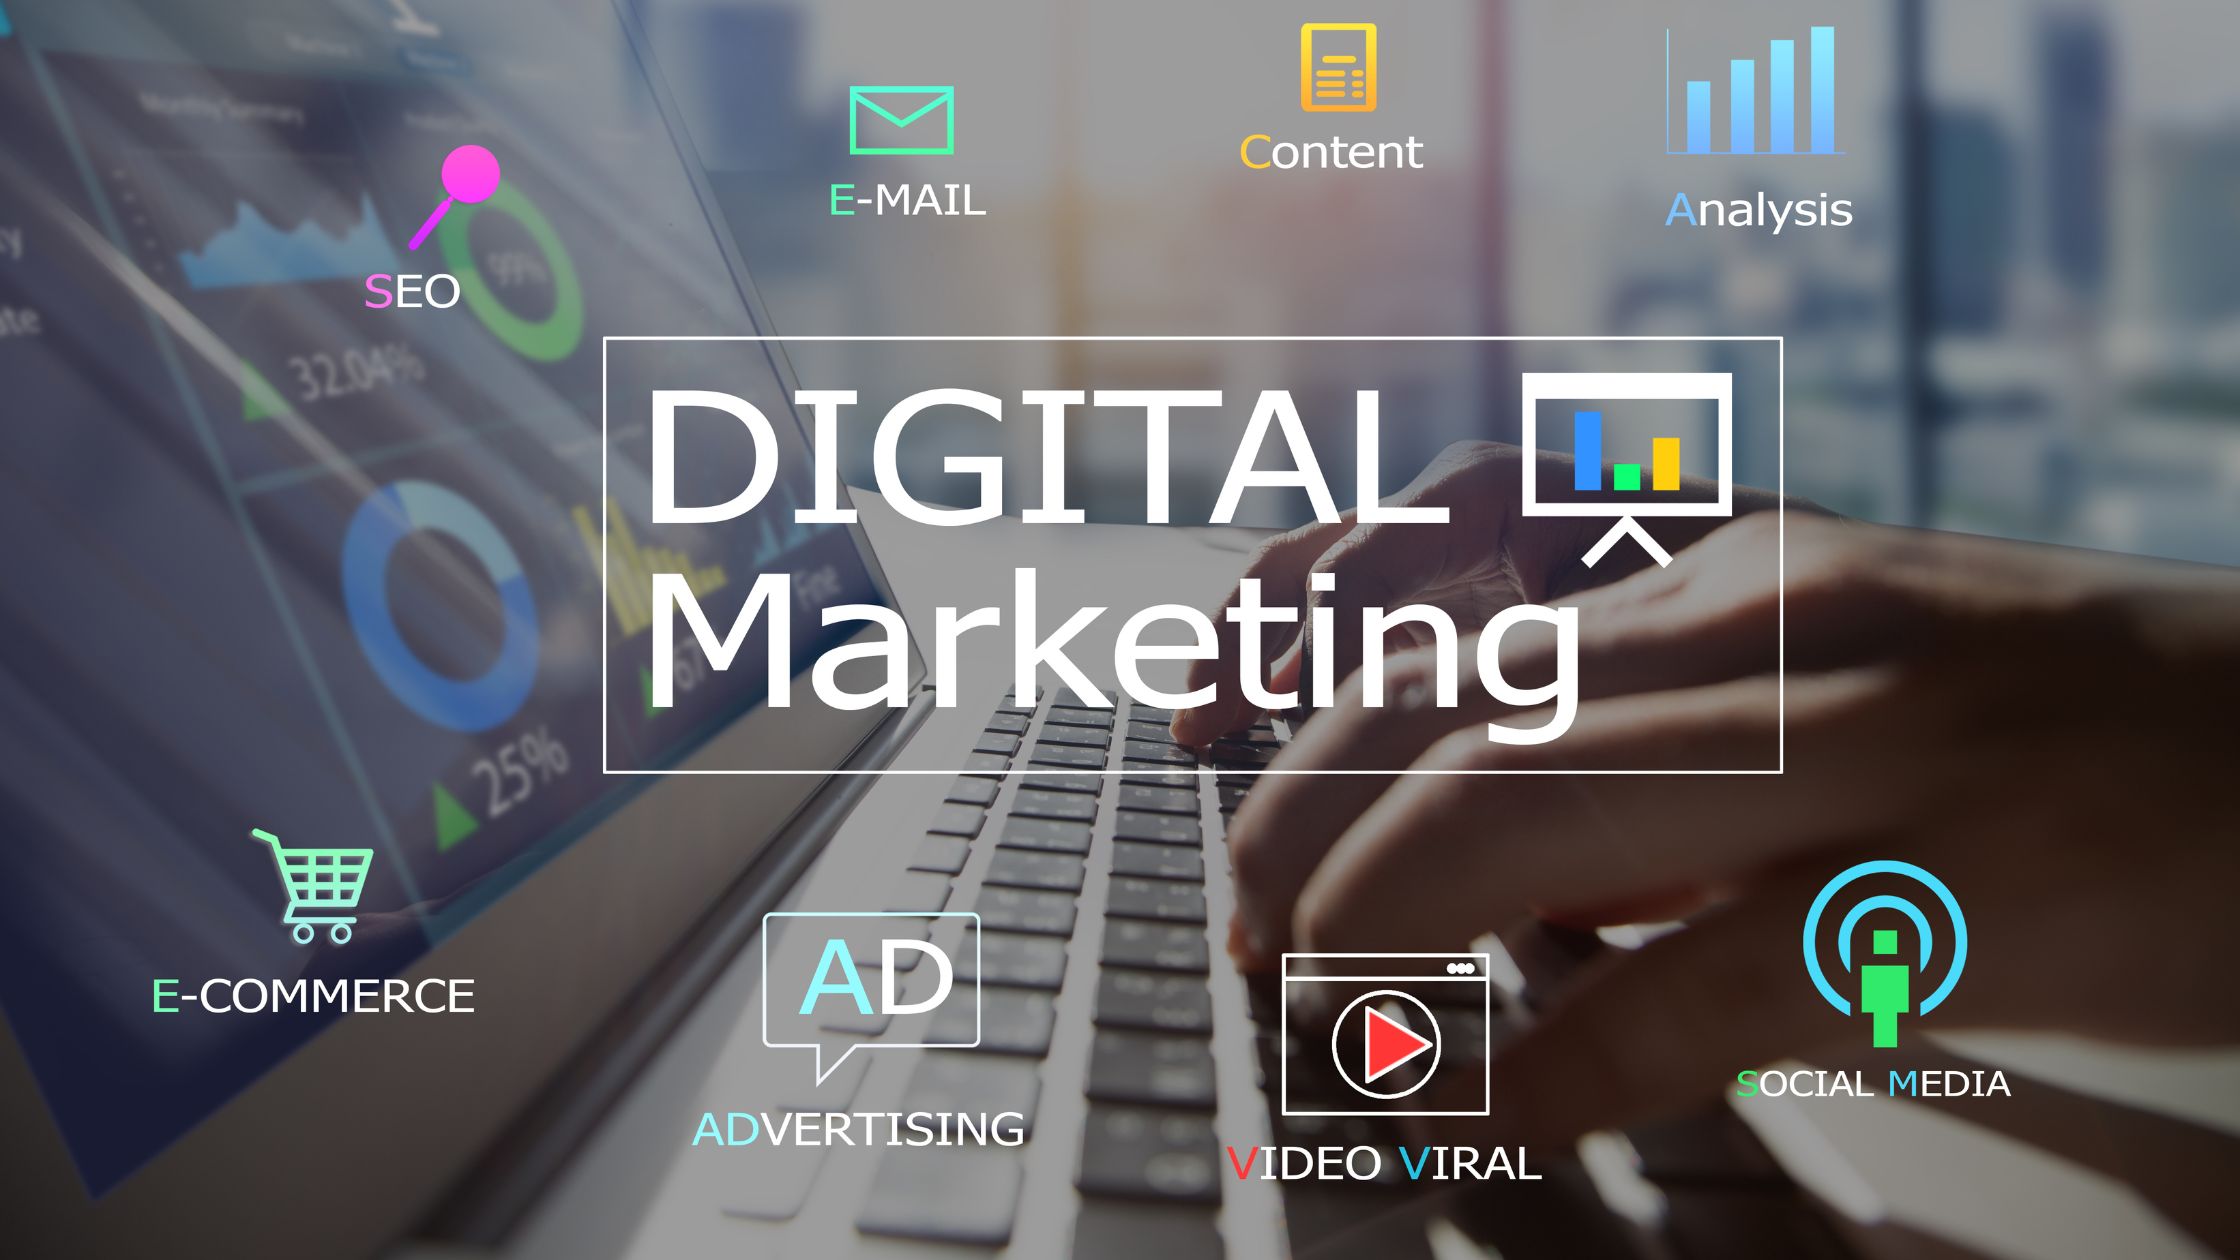 Hire a Digital Marketing Agency